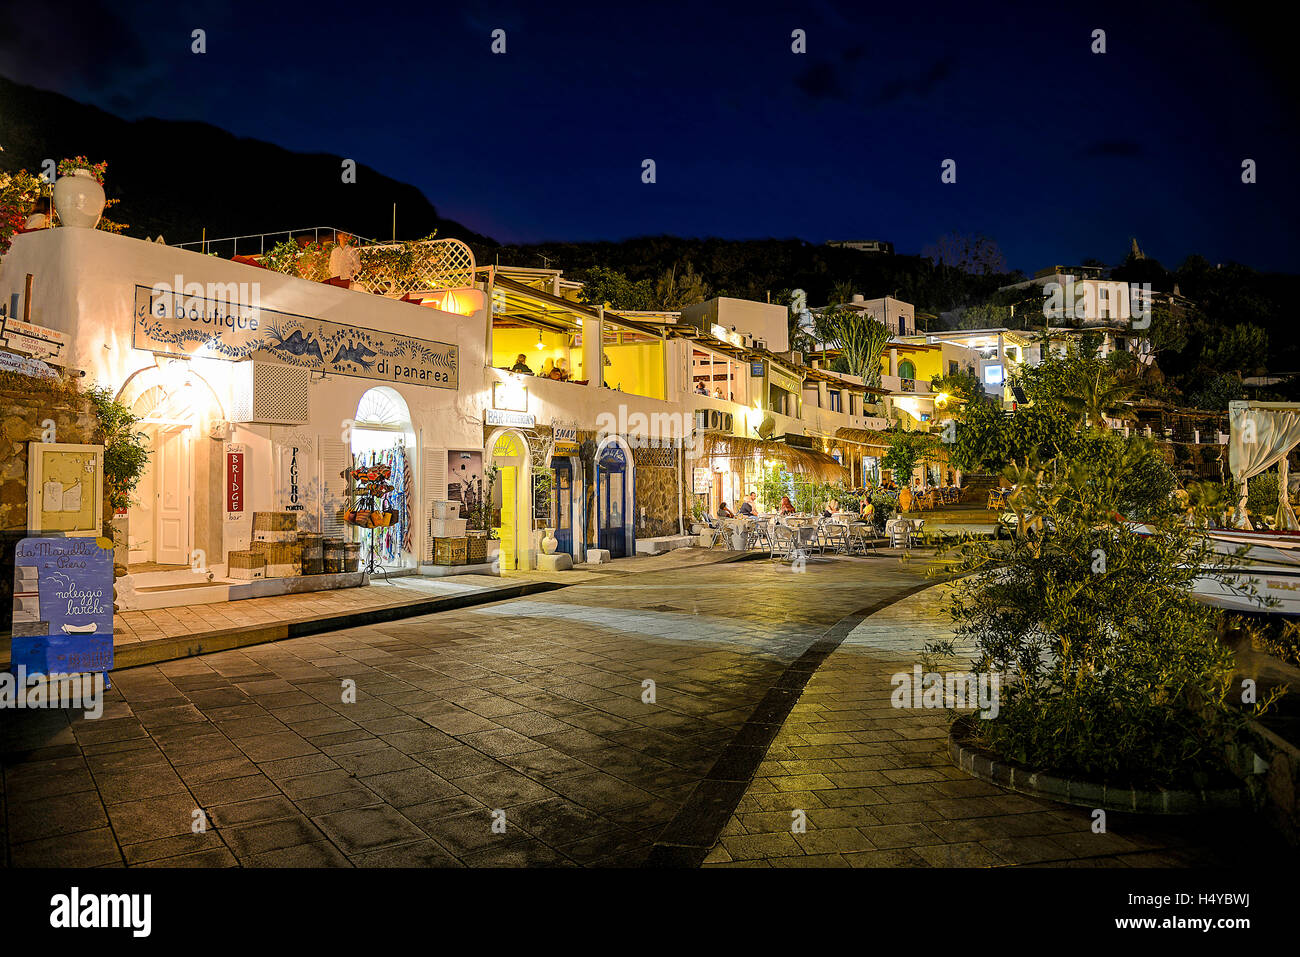 Italie Sicile Iles Eoliennes Panarea Vue de nuit sur le port de San Pietro Banque D'Images